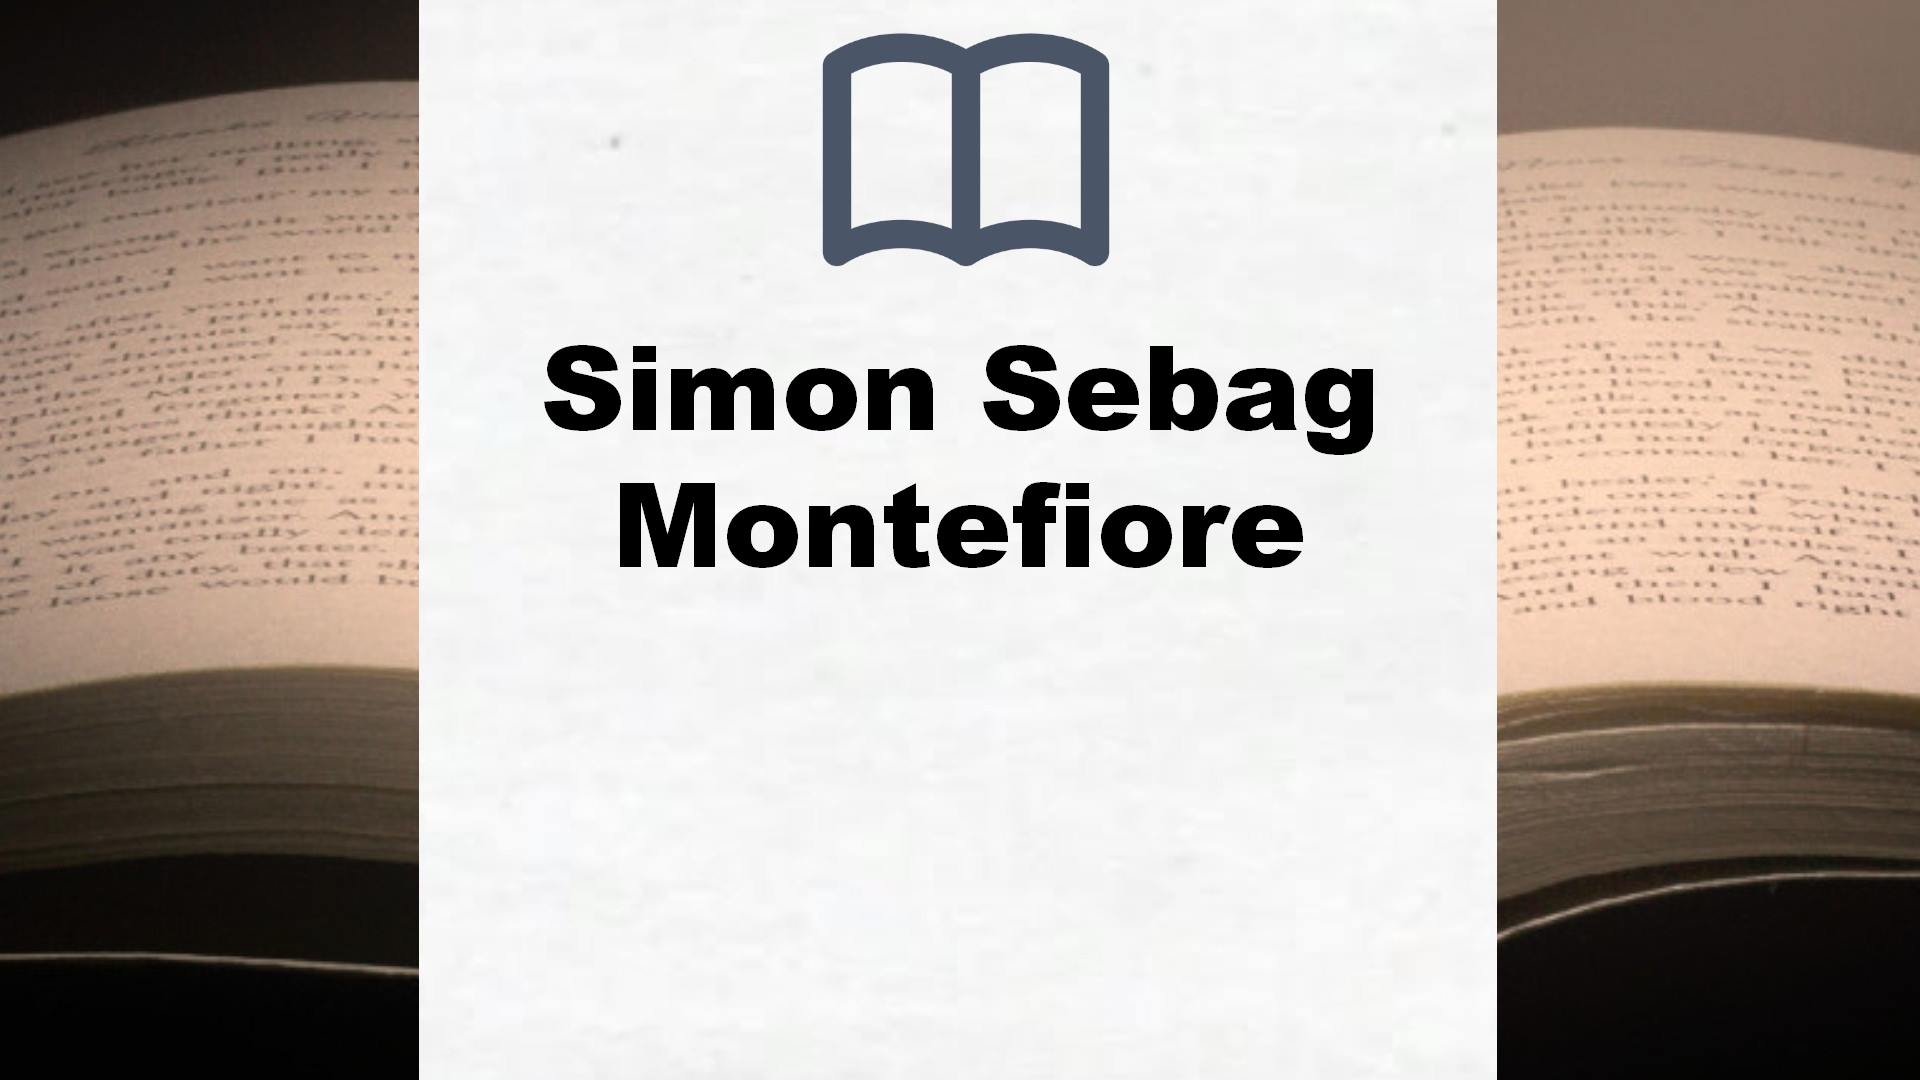 Libros Simon Sebag Montefiore